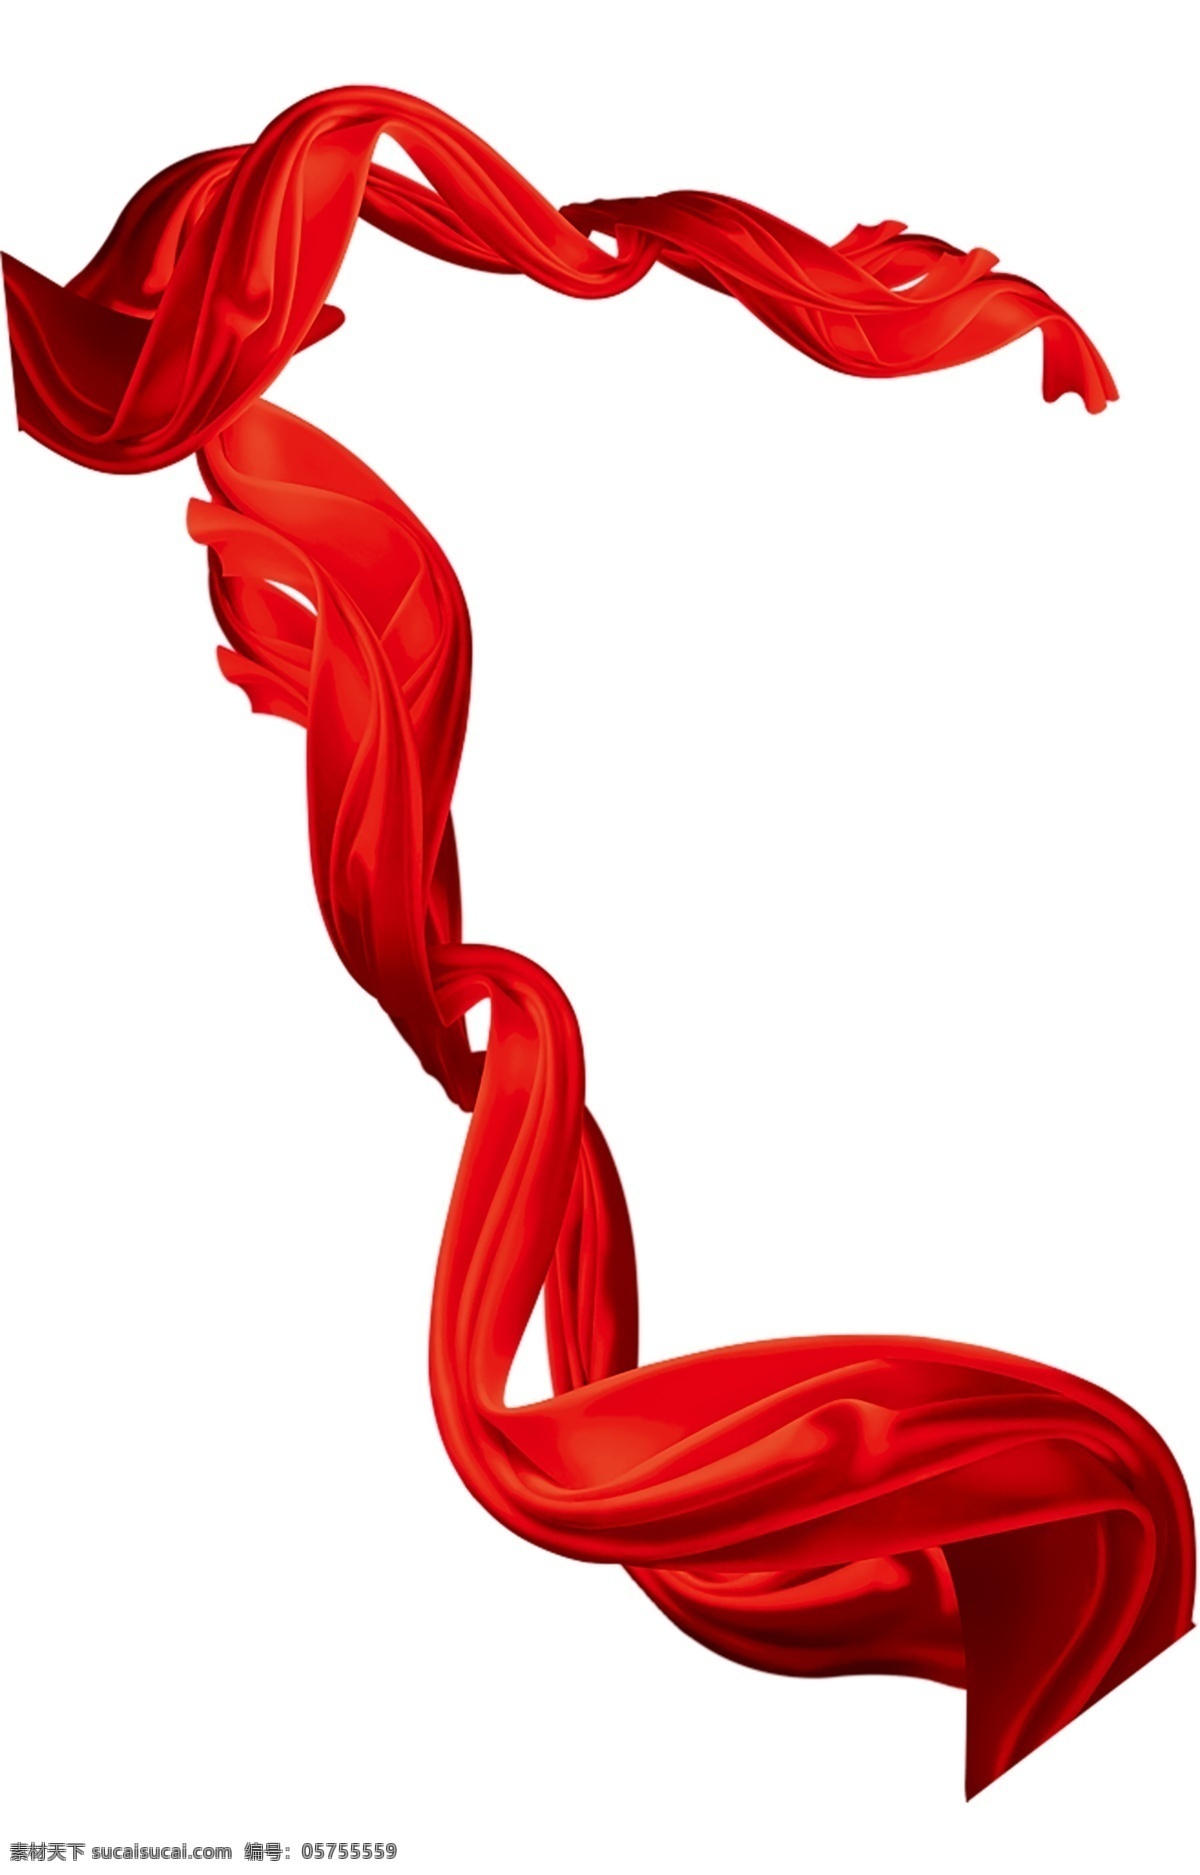 红色飘带 丝绸 红色丝绸 飘带大全 飘带 彩带 庆祝 喜庆 设计元素 源文件 分层 设计素材